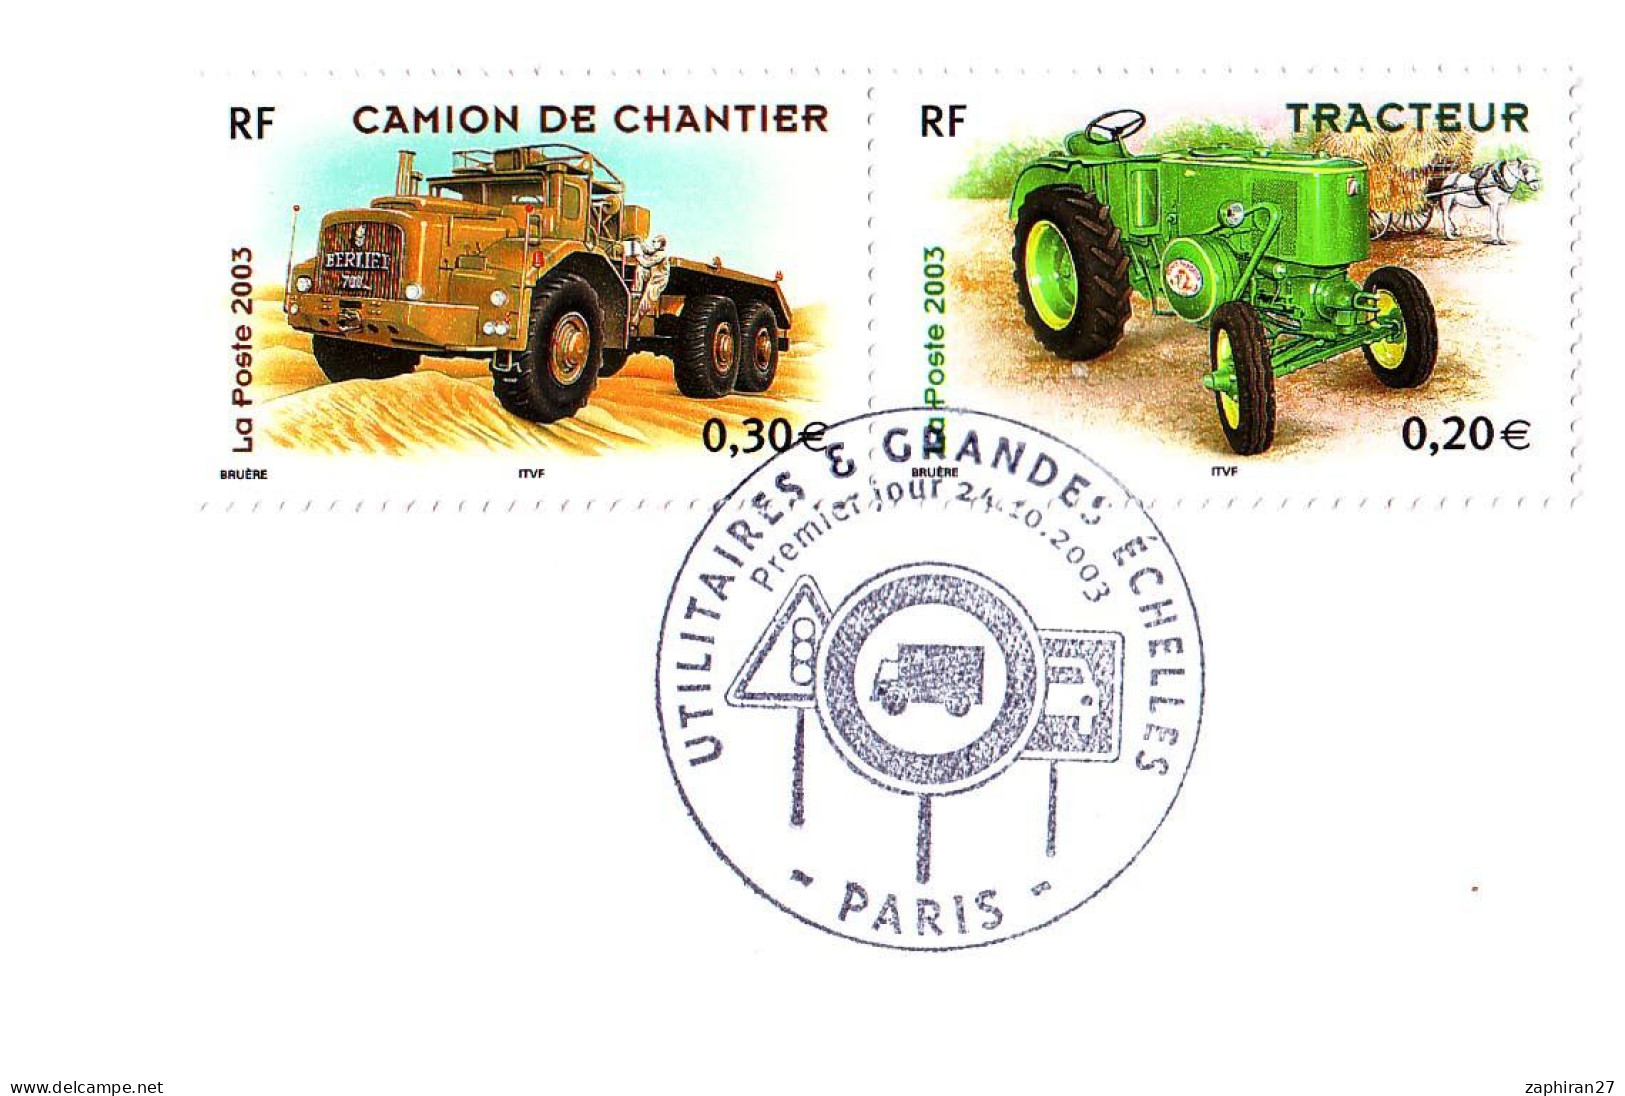 CAT TRANSORT : PARIS UTILITAIRES ET GRANDES ECHELLES / CAMION DE CHANTIER ET TRACTEUR (24-10-2003) #517# - LKW